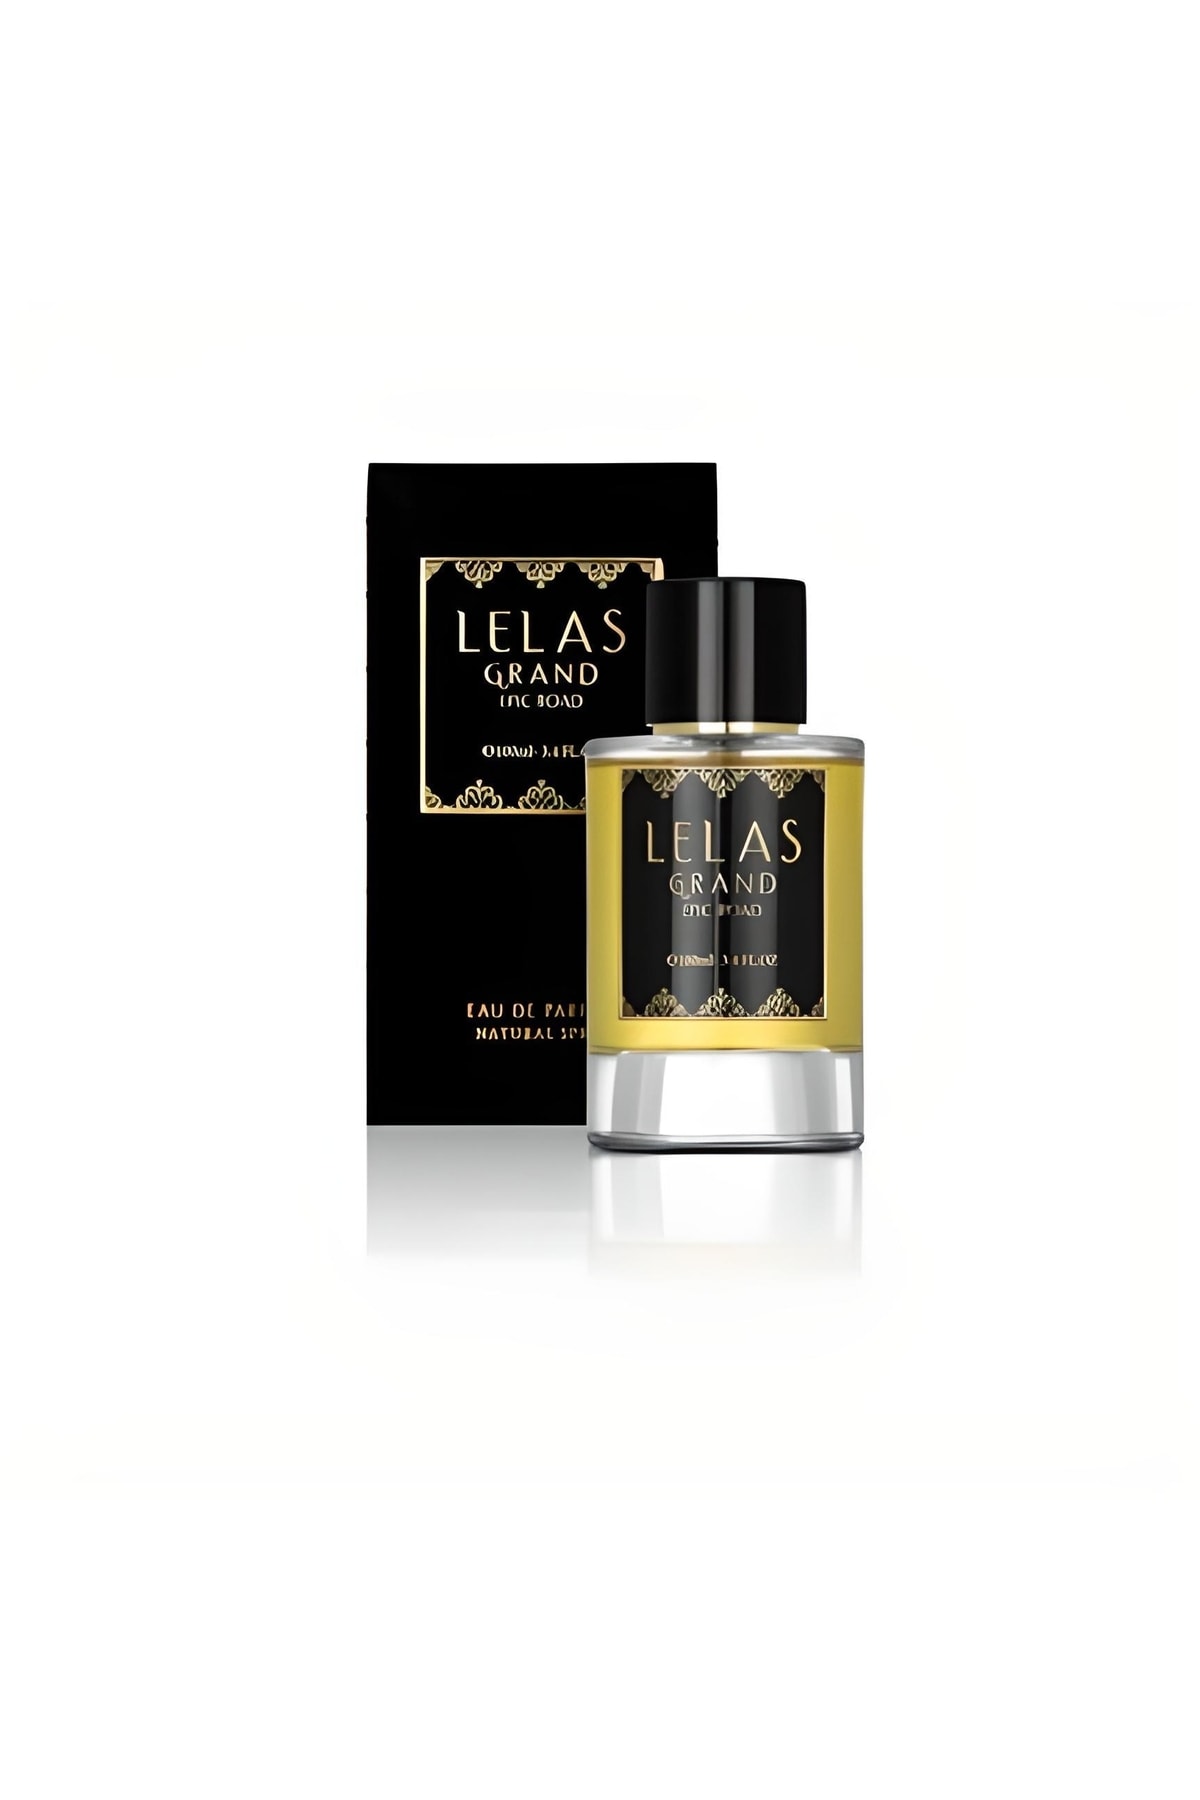 Lelas Grand Epic Road Eau De Unisex Parfum 1749